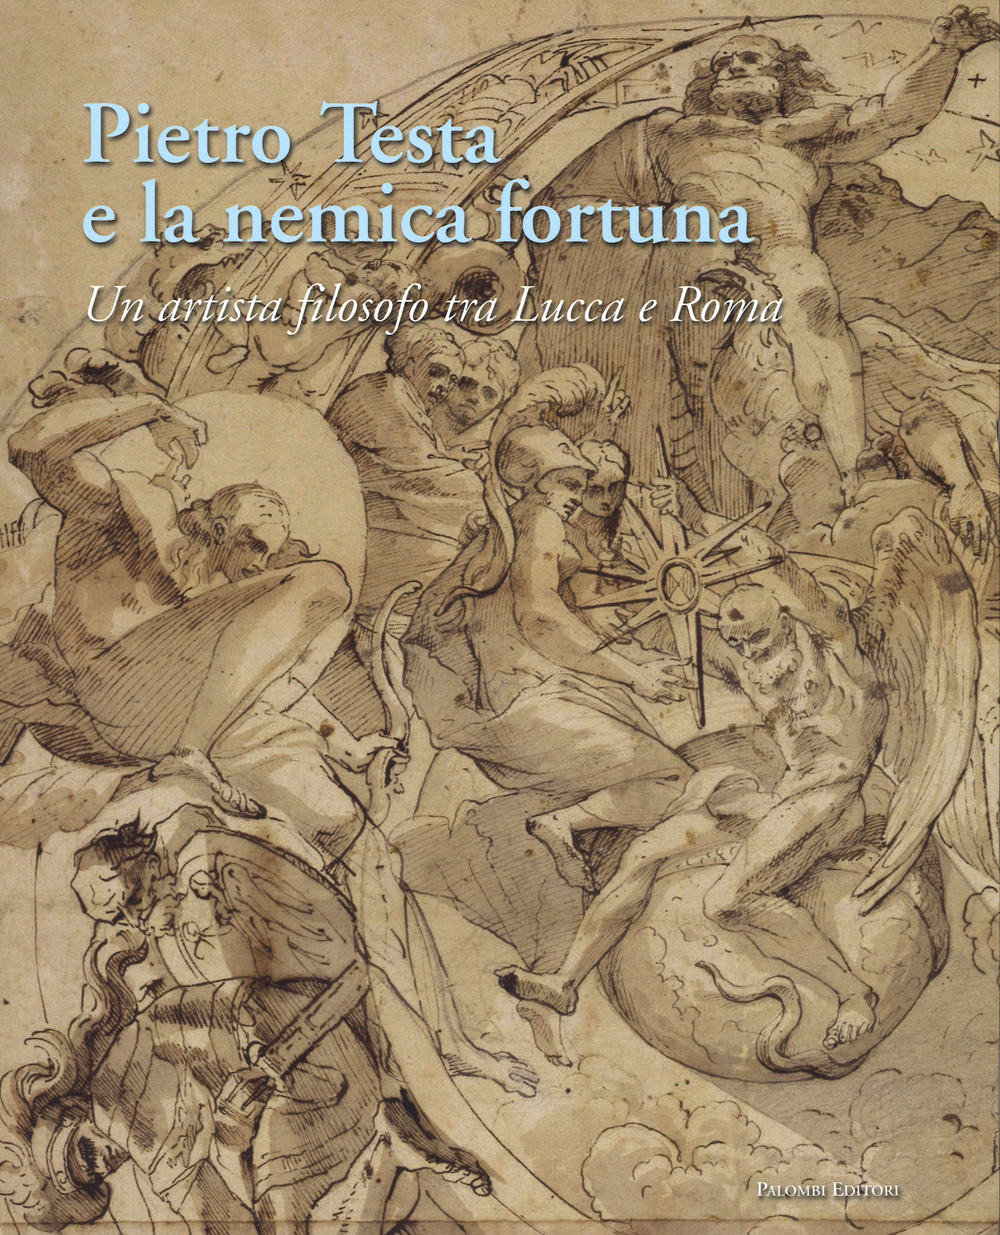 Pietro Testa e la nemica fortuna. Un artista filosofo (1612-1650) tra Lucca e Roma. Ediz. italiana e inglese